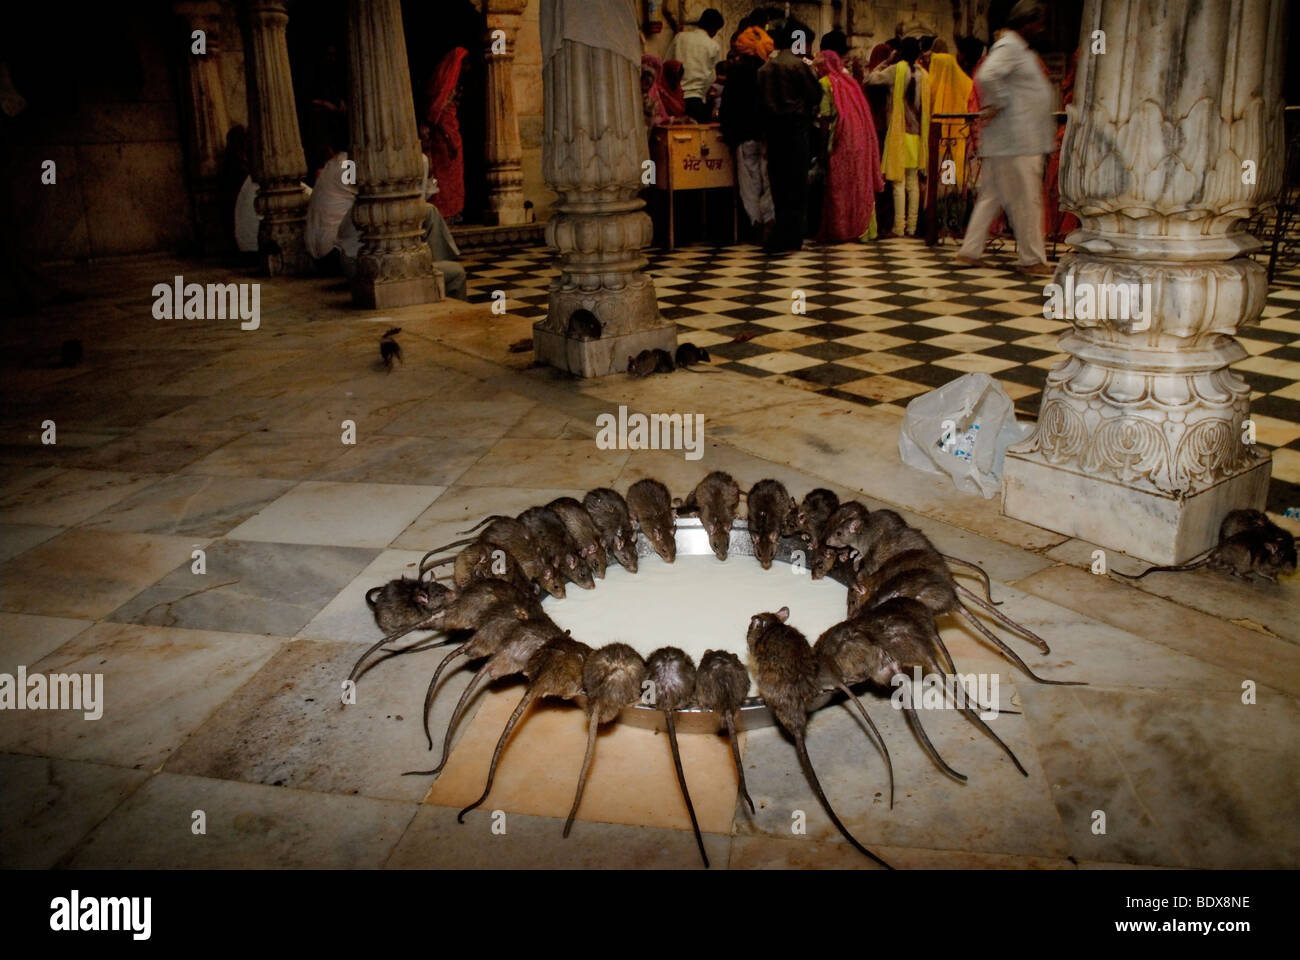 La consommation de lait chez les rats dans le temple des Rats. Deshnok, le Rajasthan en Inde. Banque D'Images